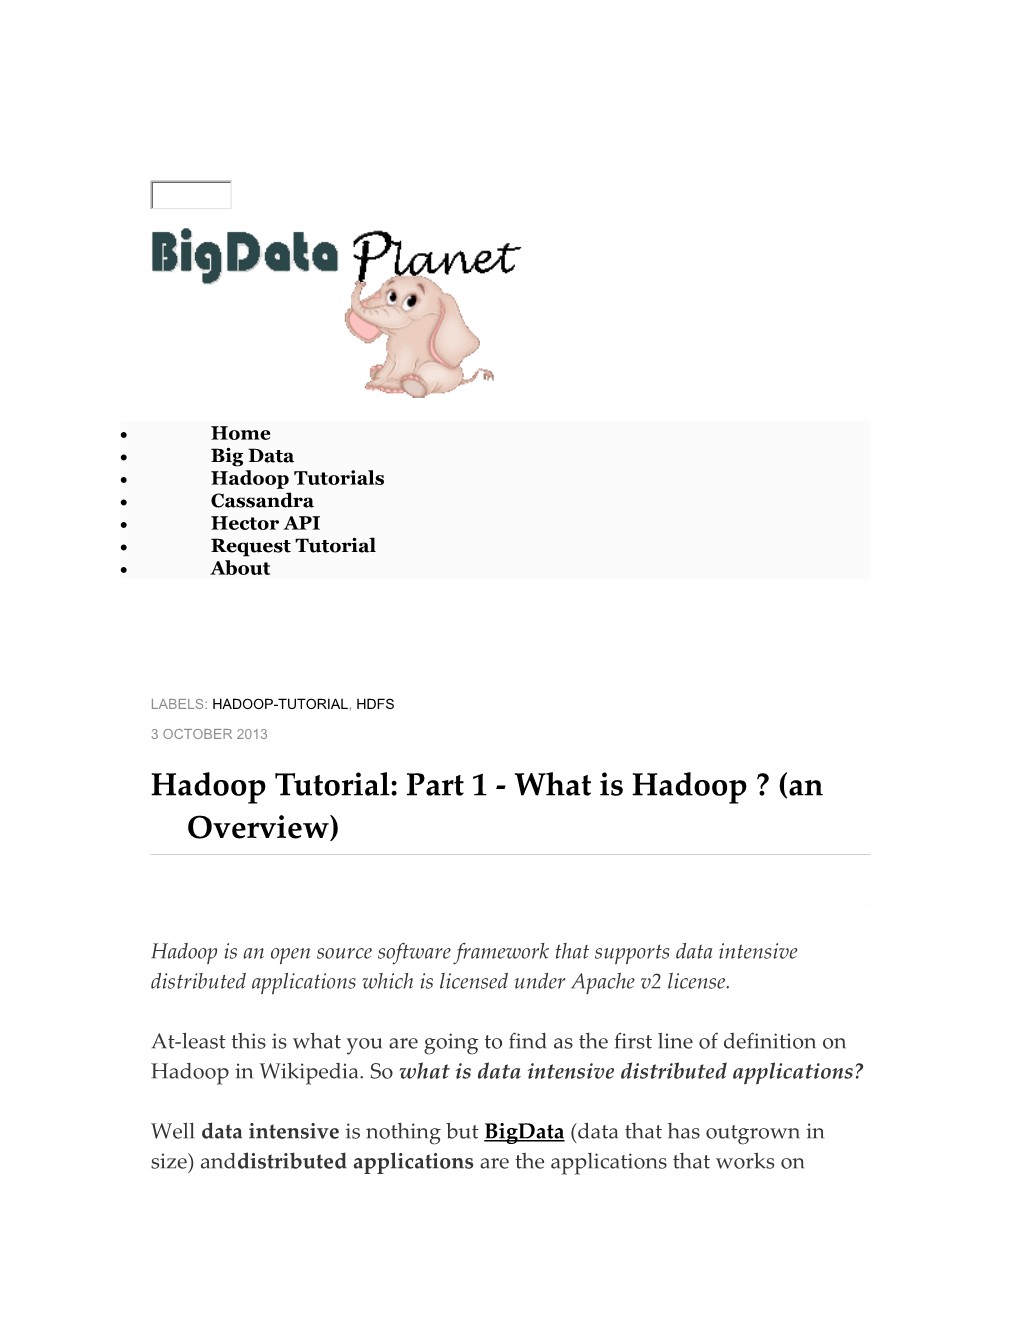 Hadoop Tutorial: Part 1 - What Is Hadoop ? (An Overview)